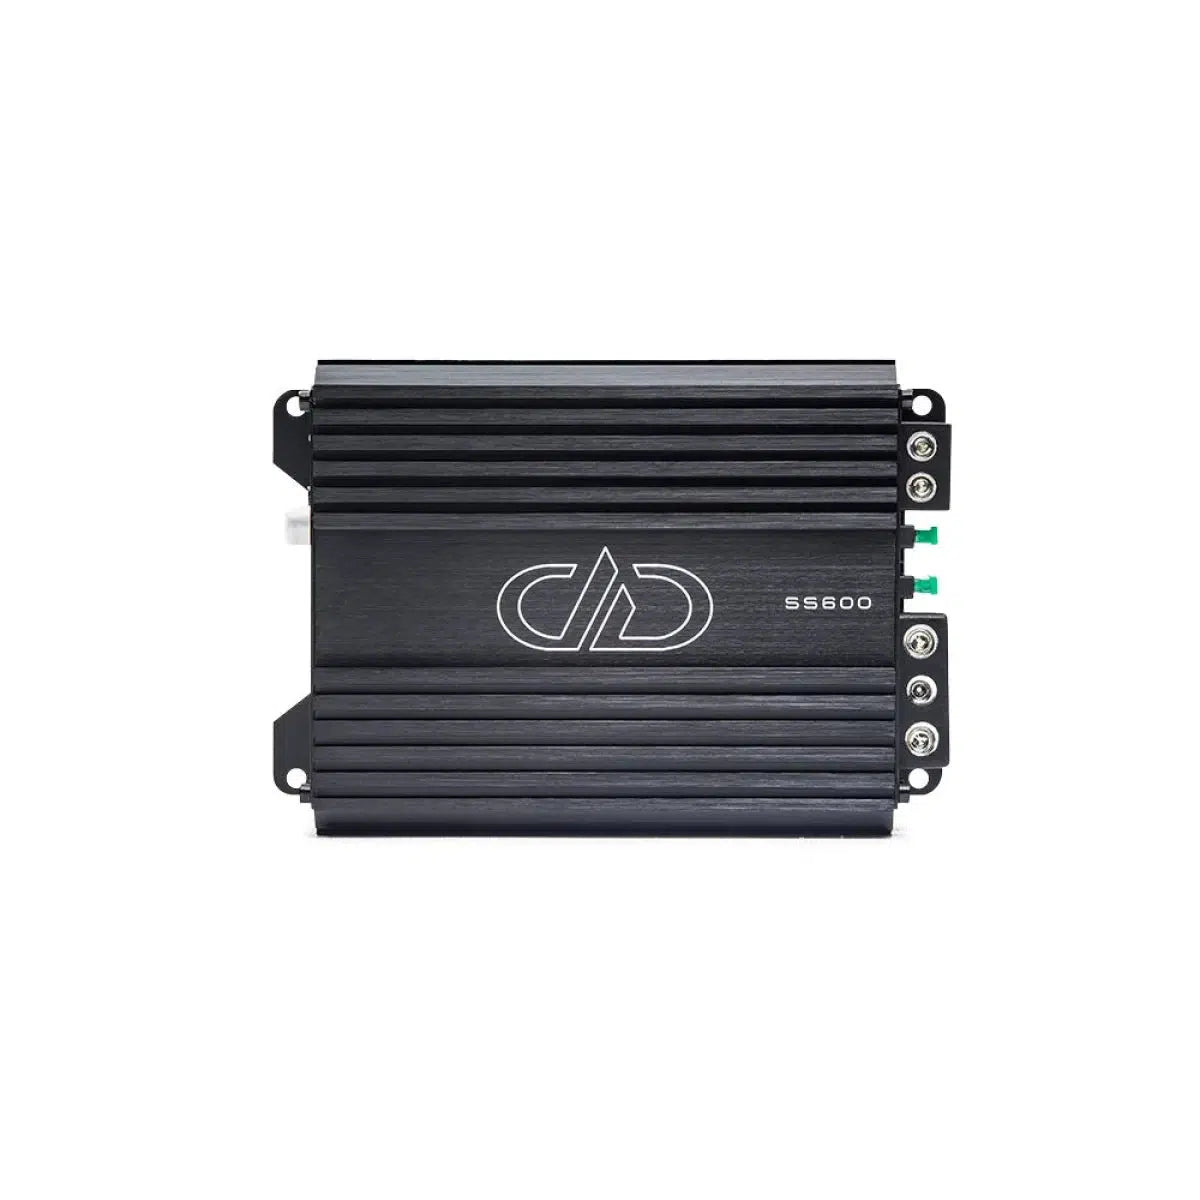 DD Audio-SS600-1-Channel Amplifier-Masori.de